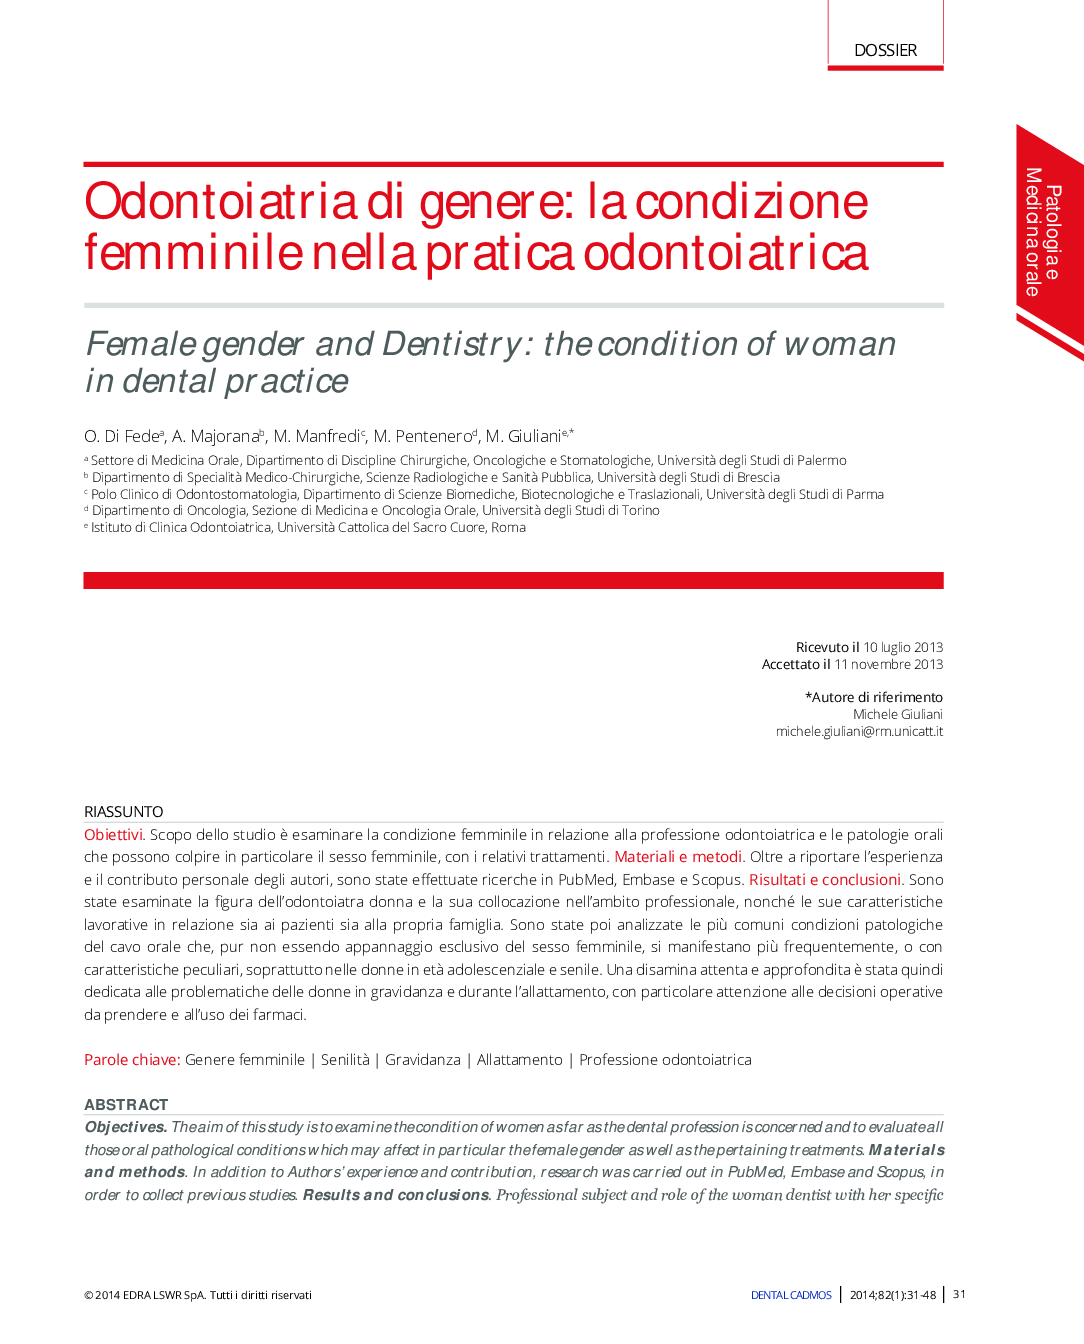 دندانپزشکی جنسیتی: وضعیت زن در عمل دندانپزشکی 